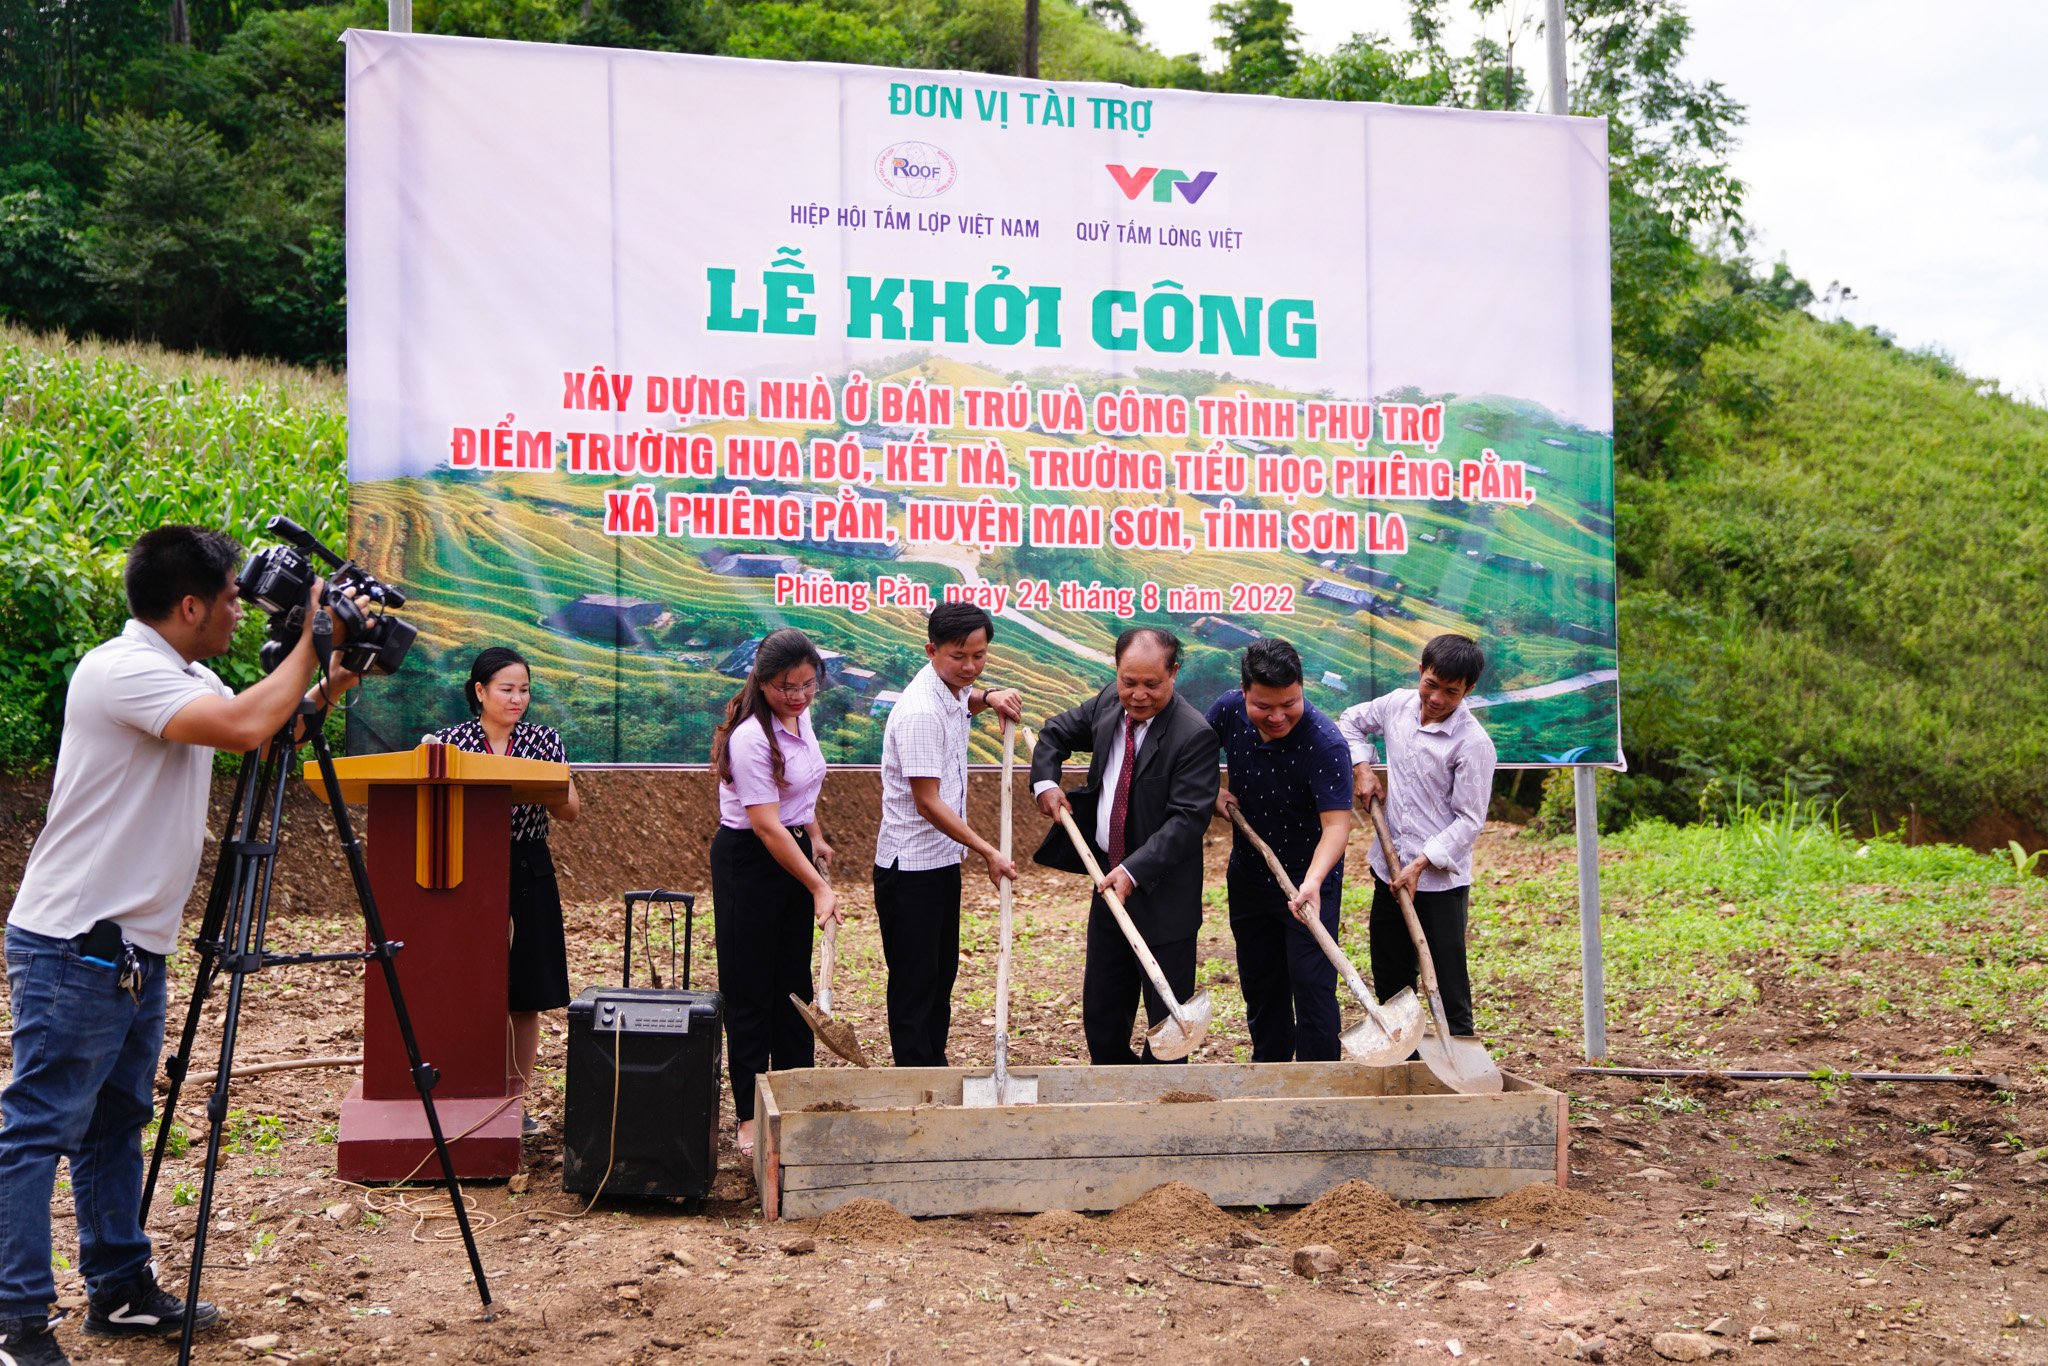 Hiệp hội Tấm lợp Việt Nam và Quỹ Tấm Lòng Việt khởi công xây dựng khu nội trú cho Điểm trường Hua Bó - Kết Nà